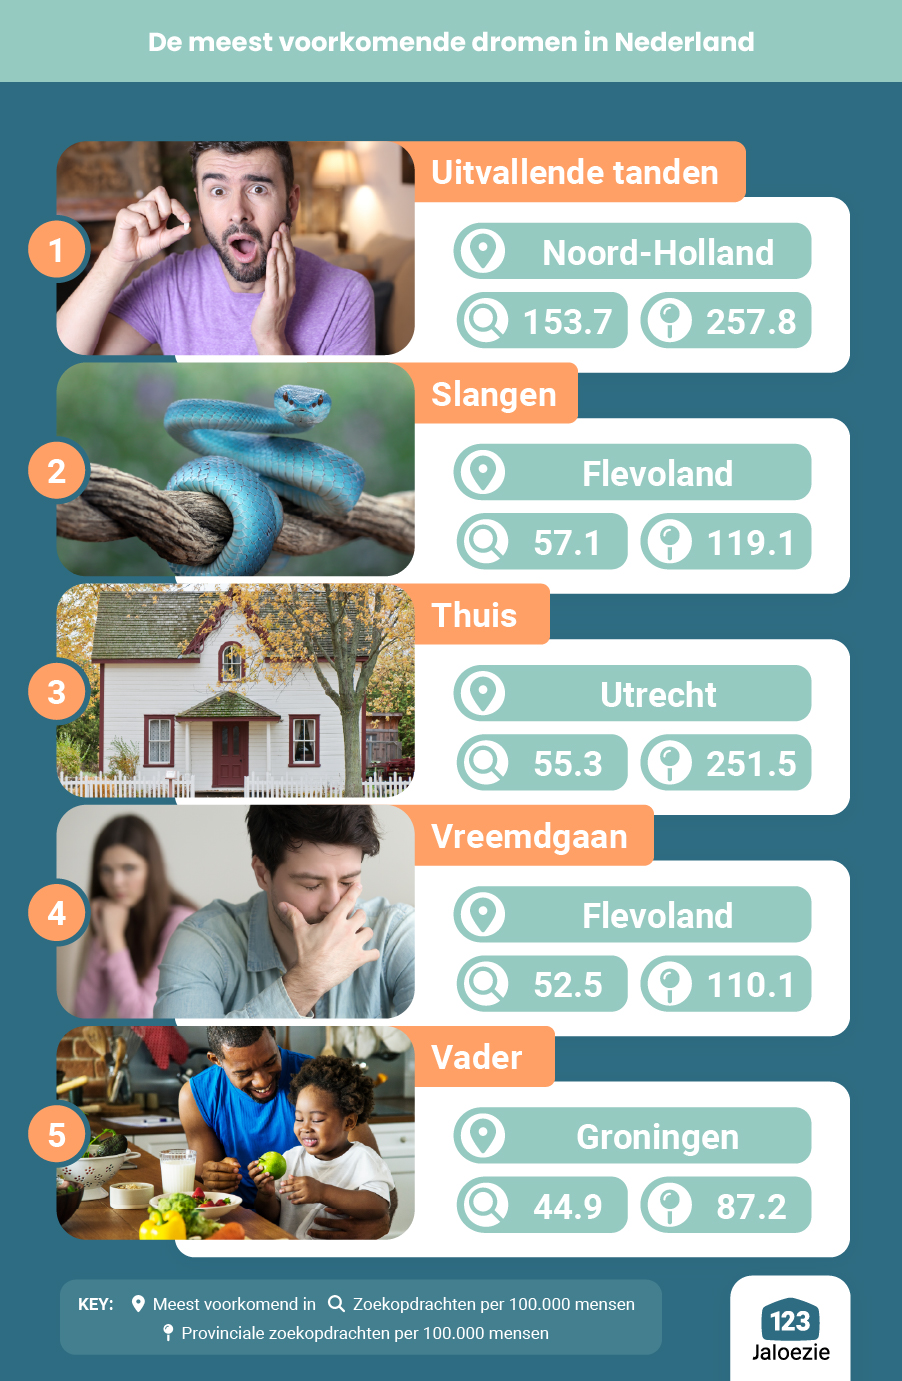 De 20 meest voorkomende dromen in Nederland